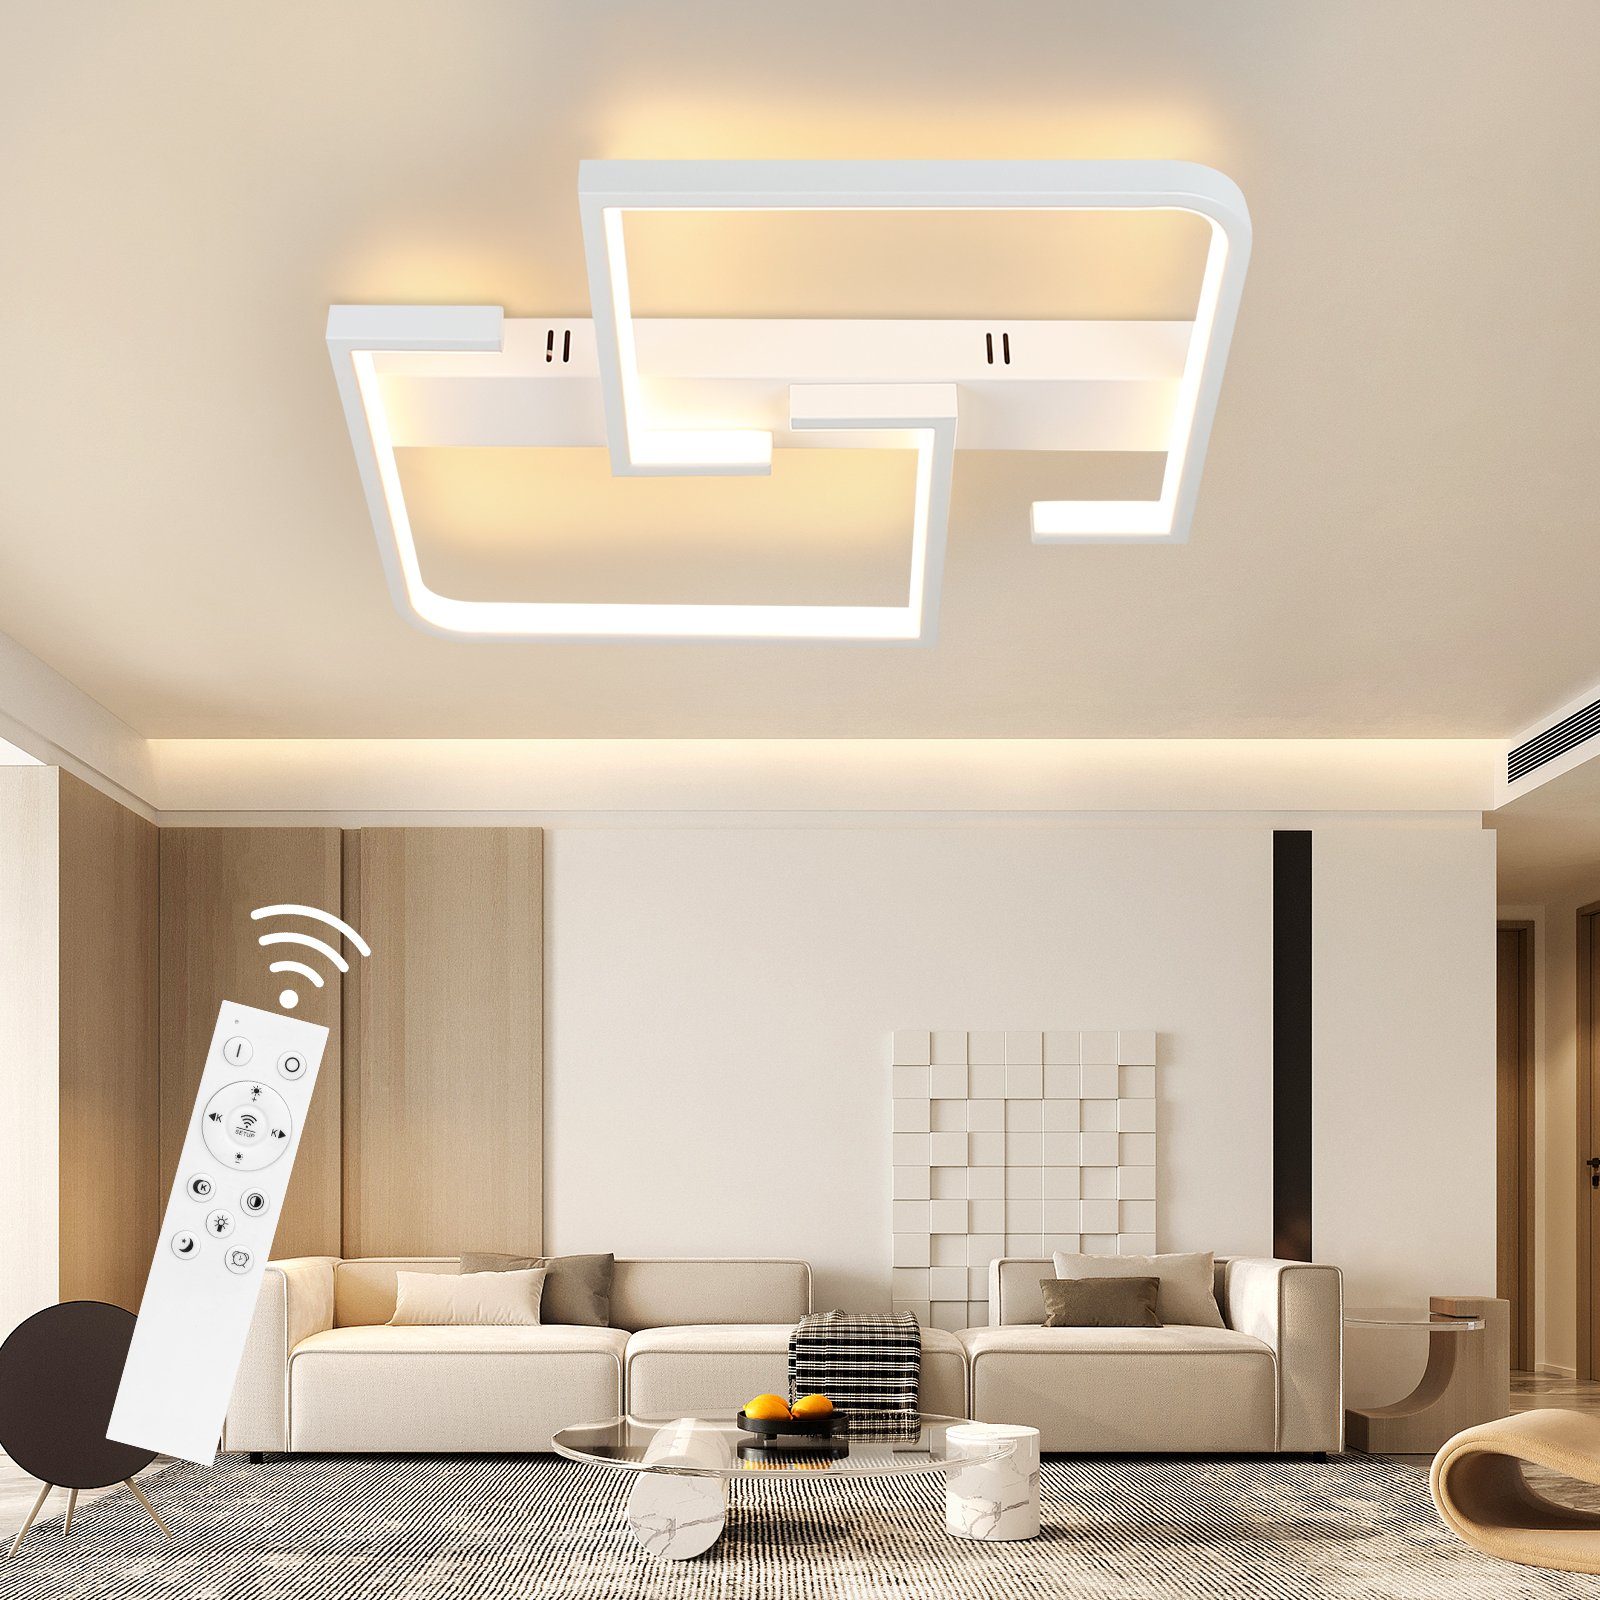 ZMH LED Deckenleuchte Dimmbare Wohnzimmer Deckenlampe mit Fernbedienung, 46W, Modern Design, 3000-6500K, Nachtlichtmodus, weiß